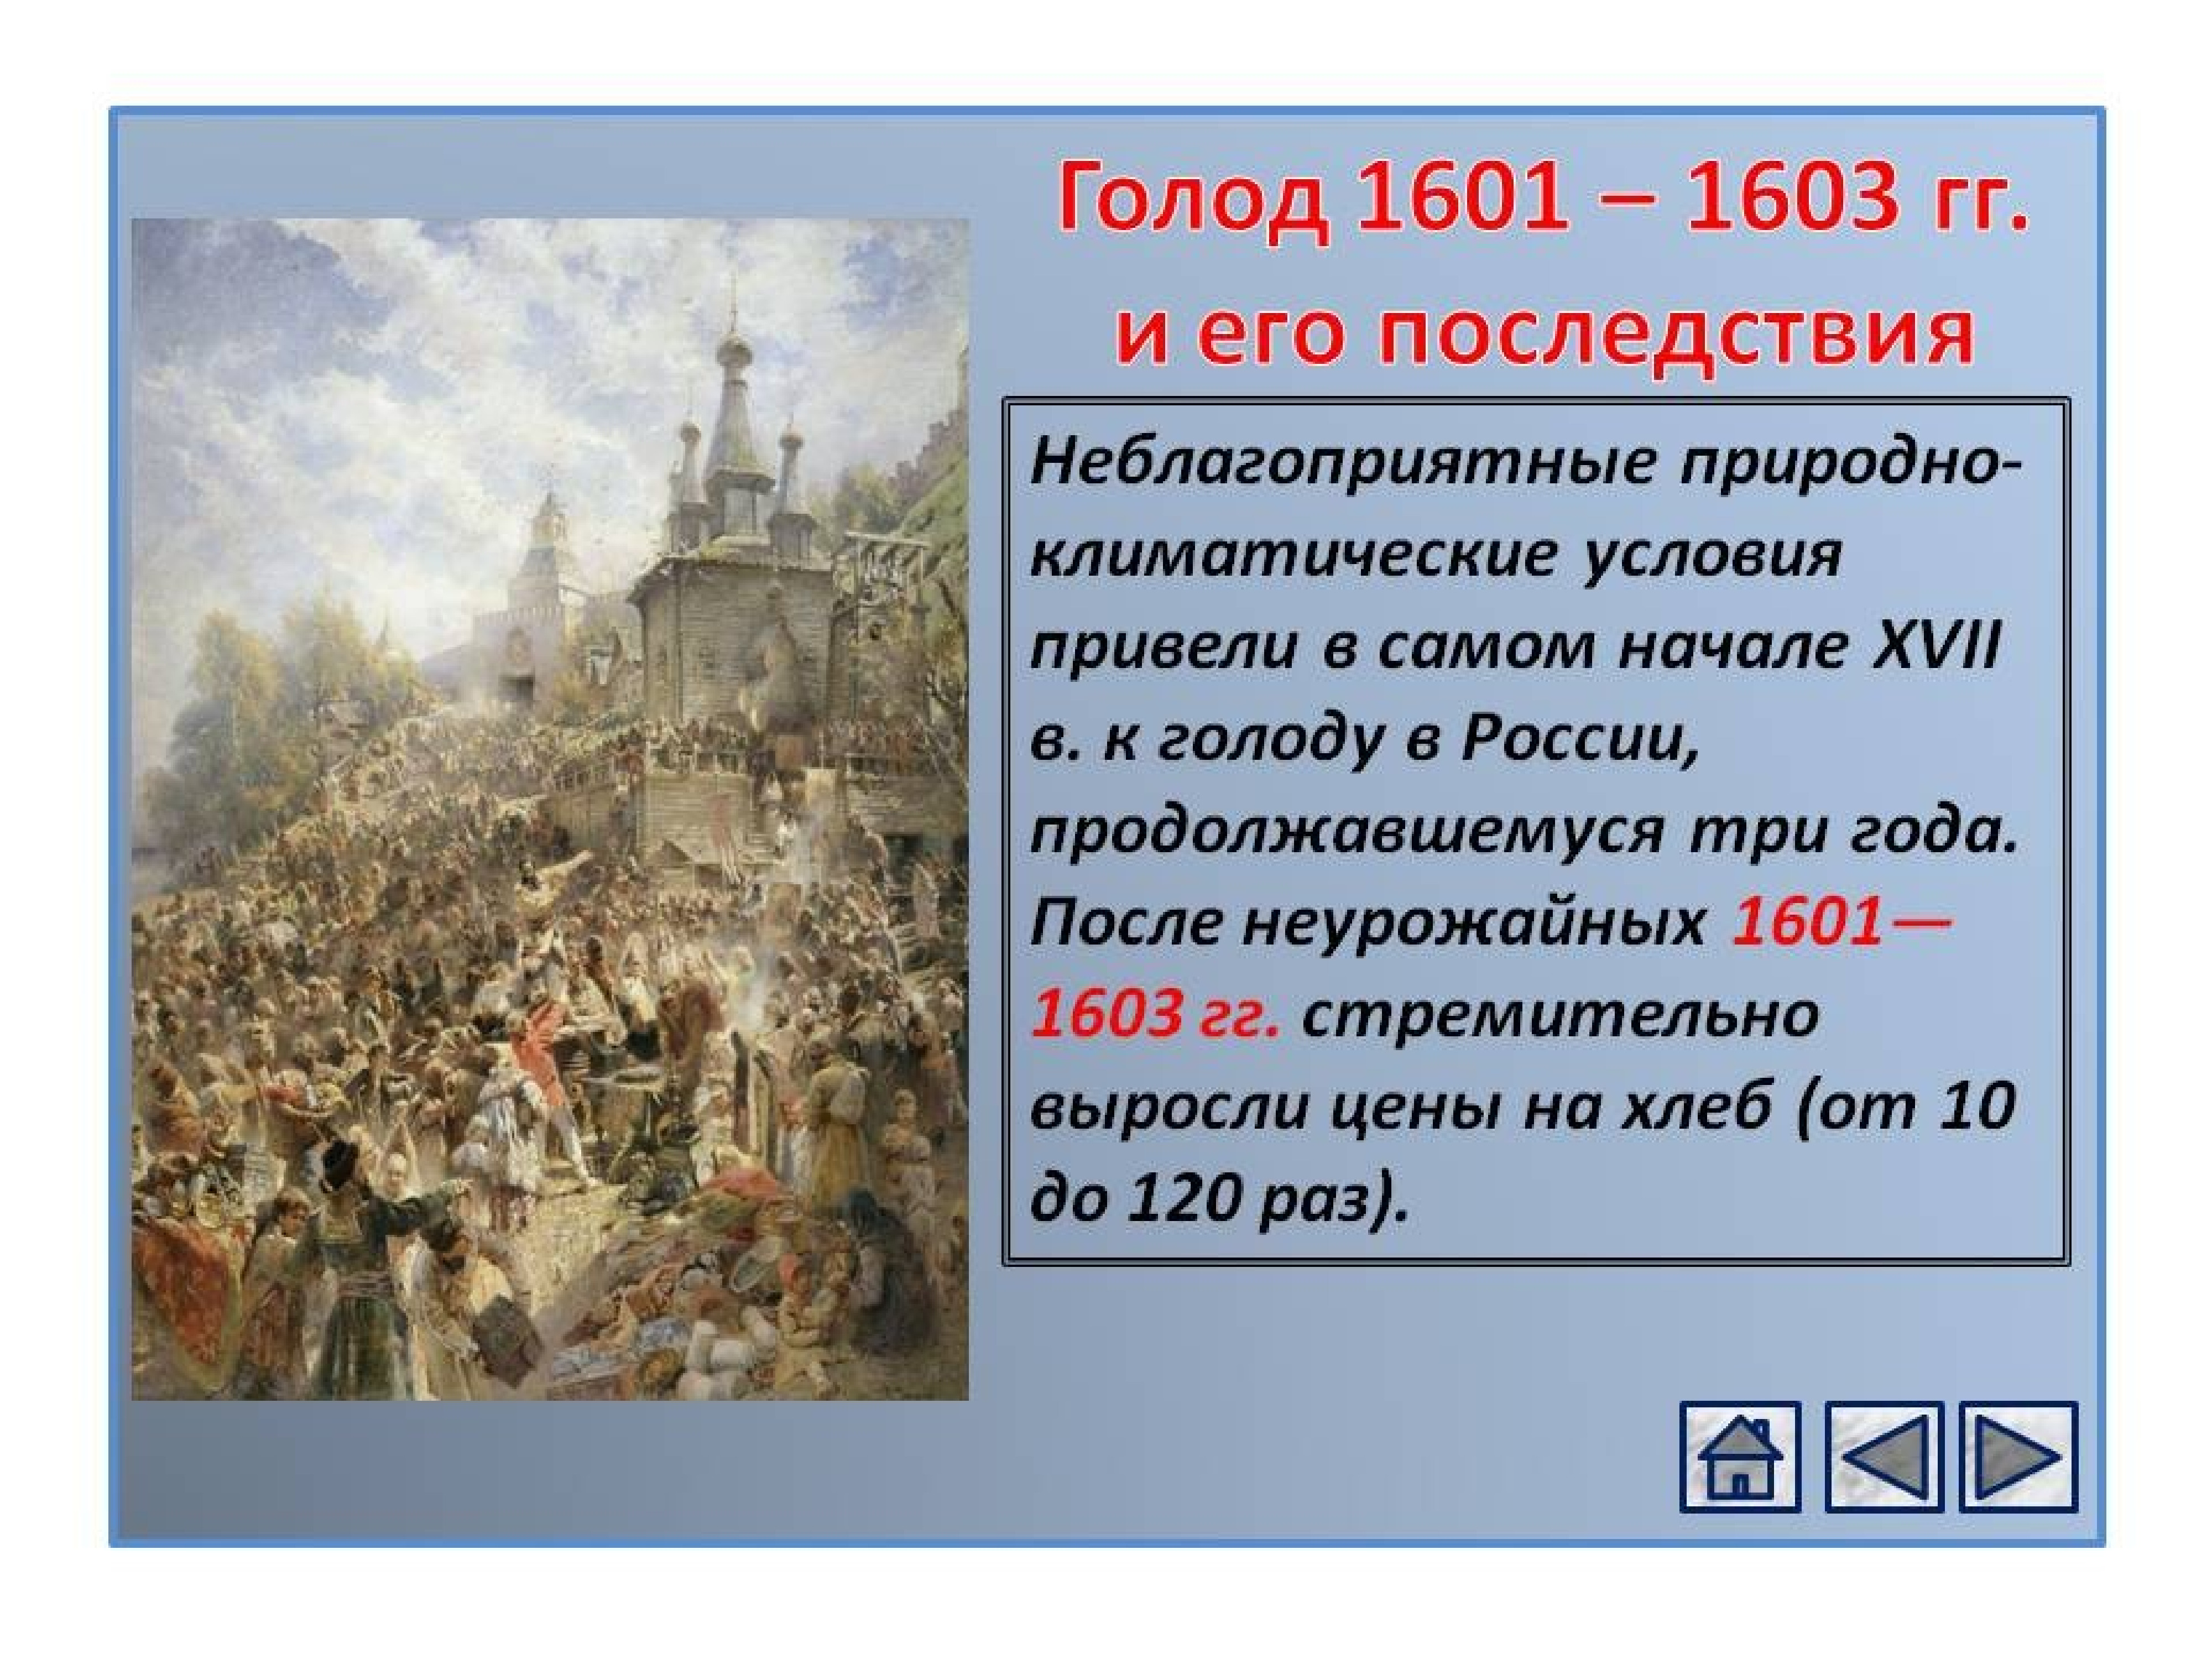 Дата голода в россии. Великий голод 1601-1603 в России. Великий голод (1601-1603). Смута в России с 1601-1603.